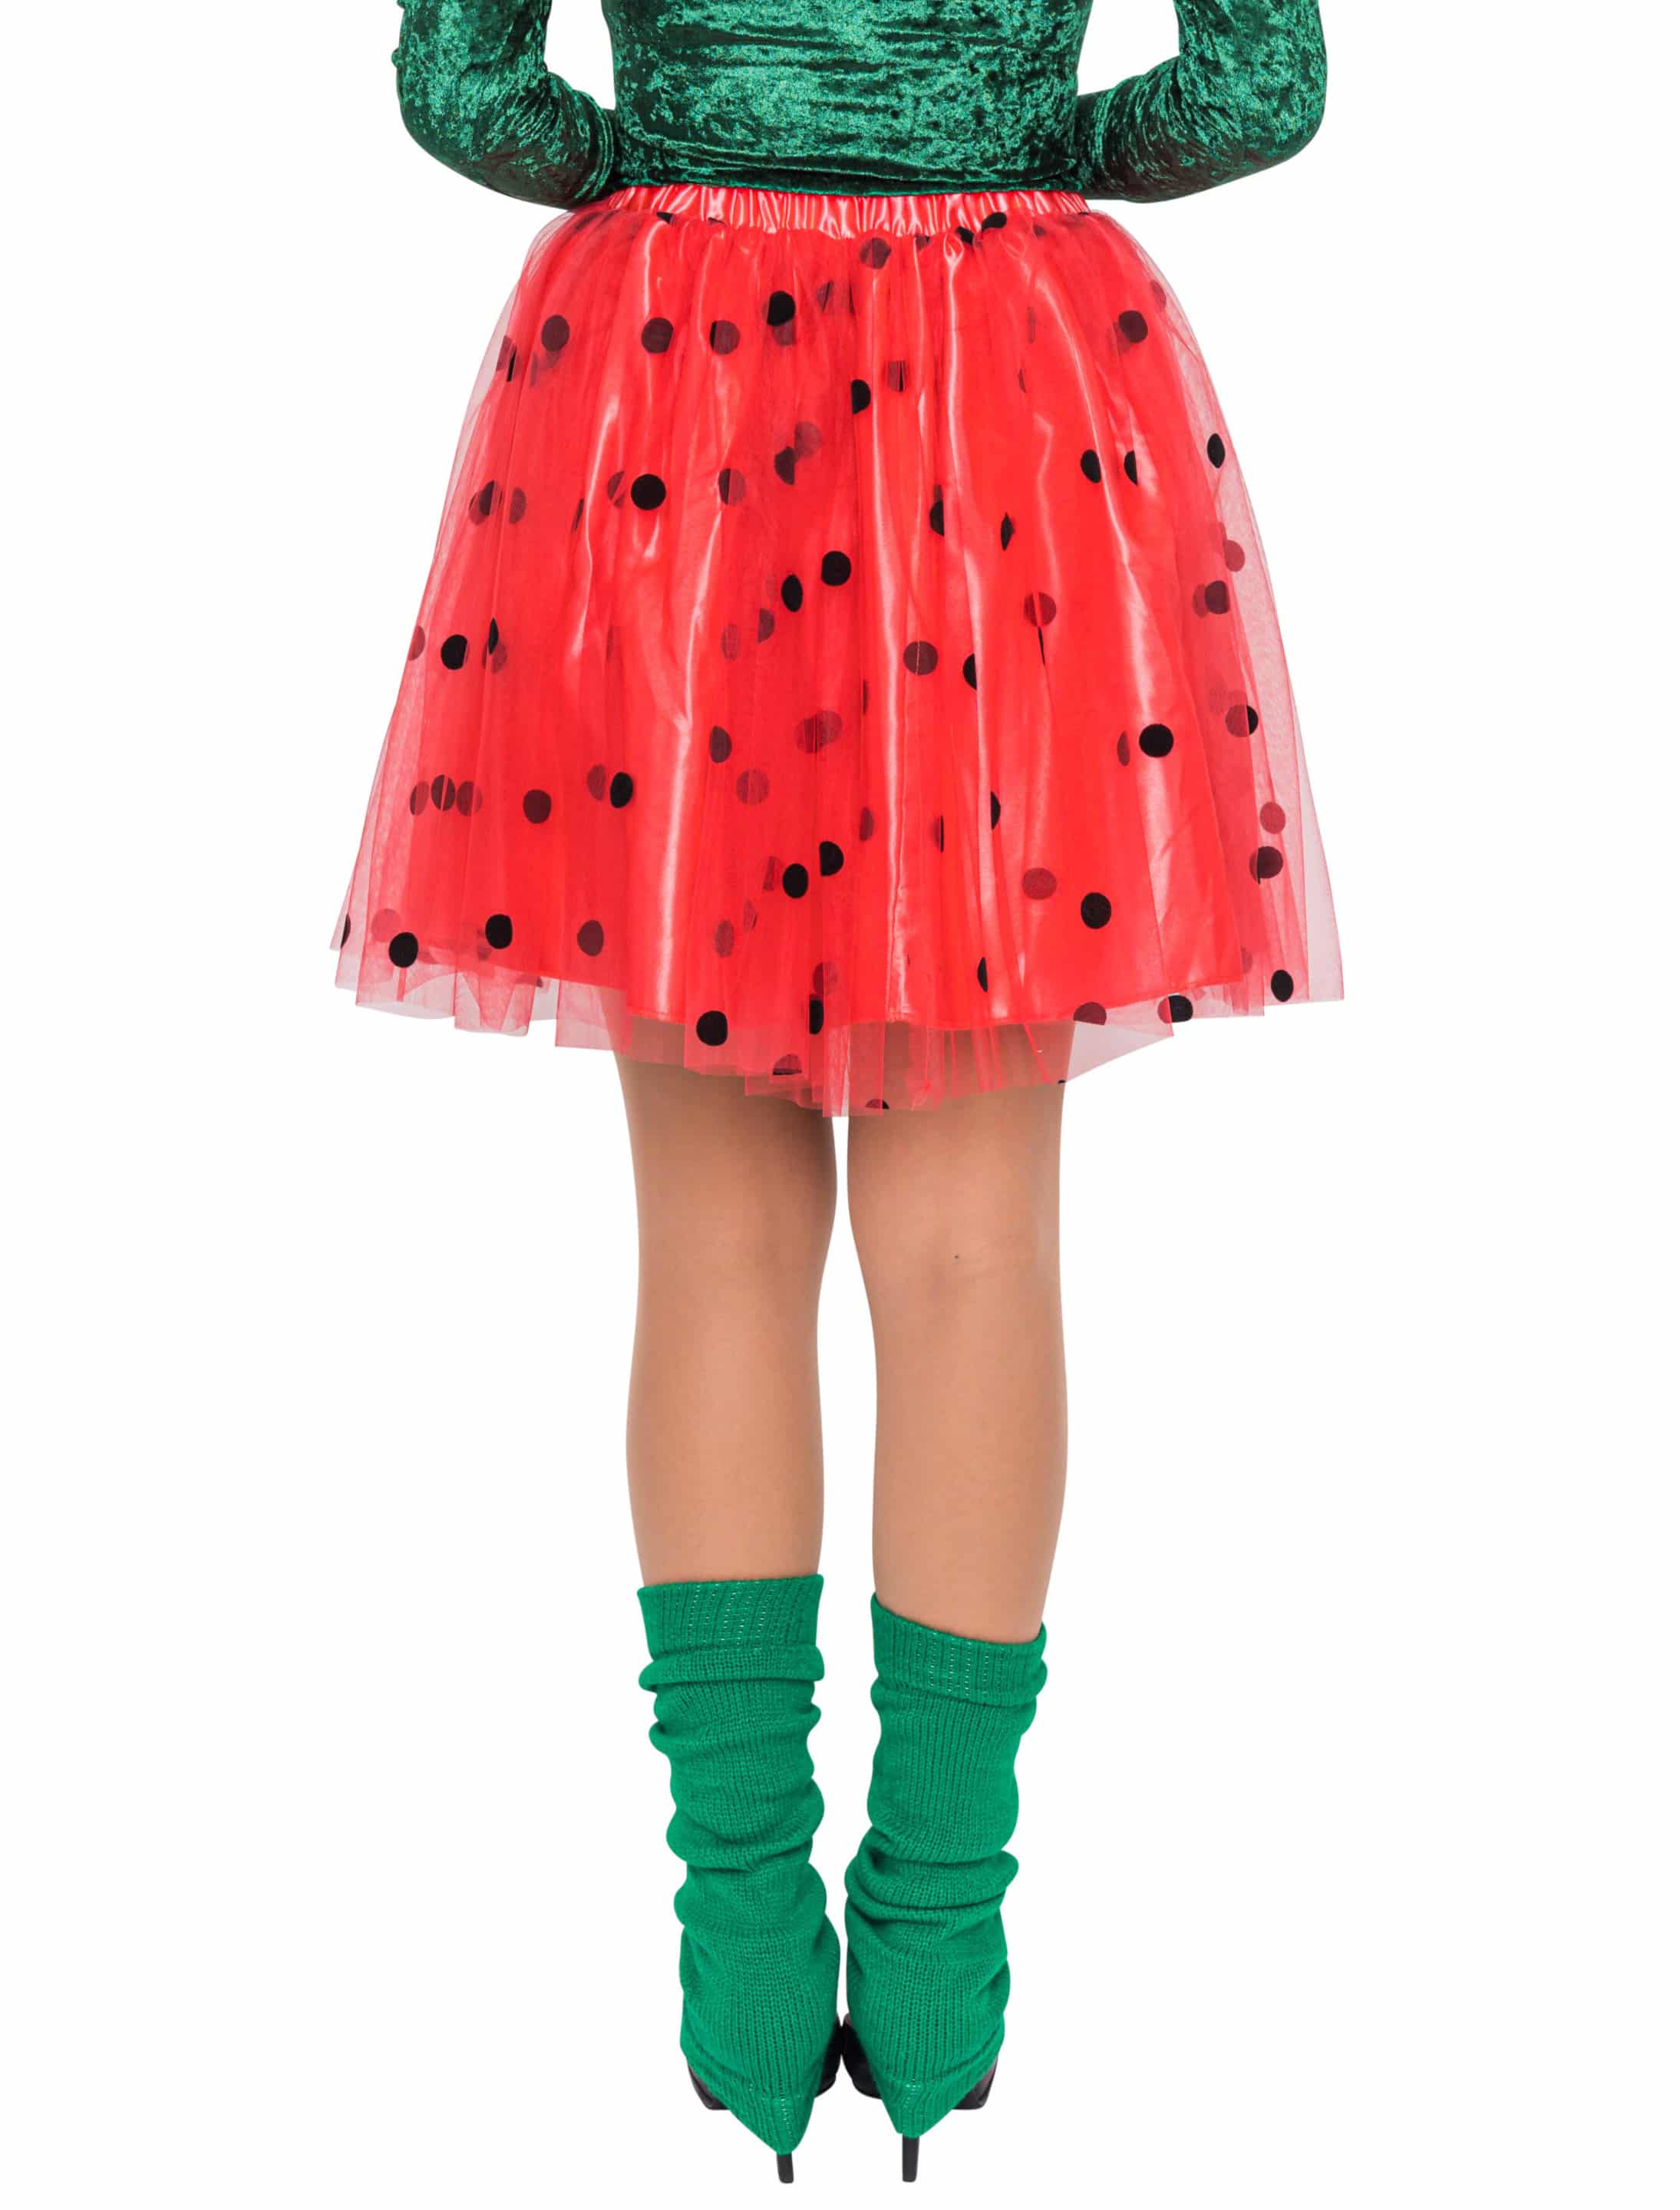 Petticoat rot mit kleinen schwarzen Punkten